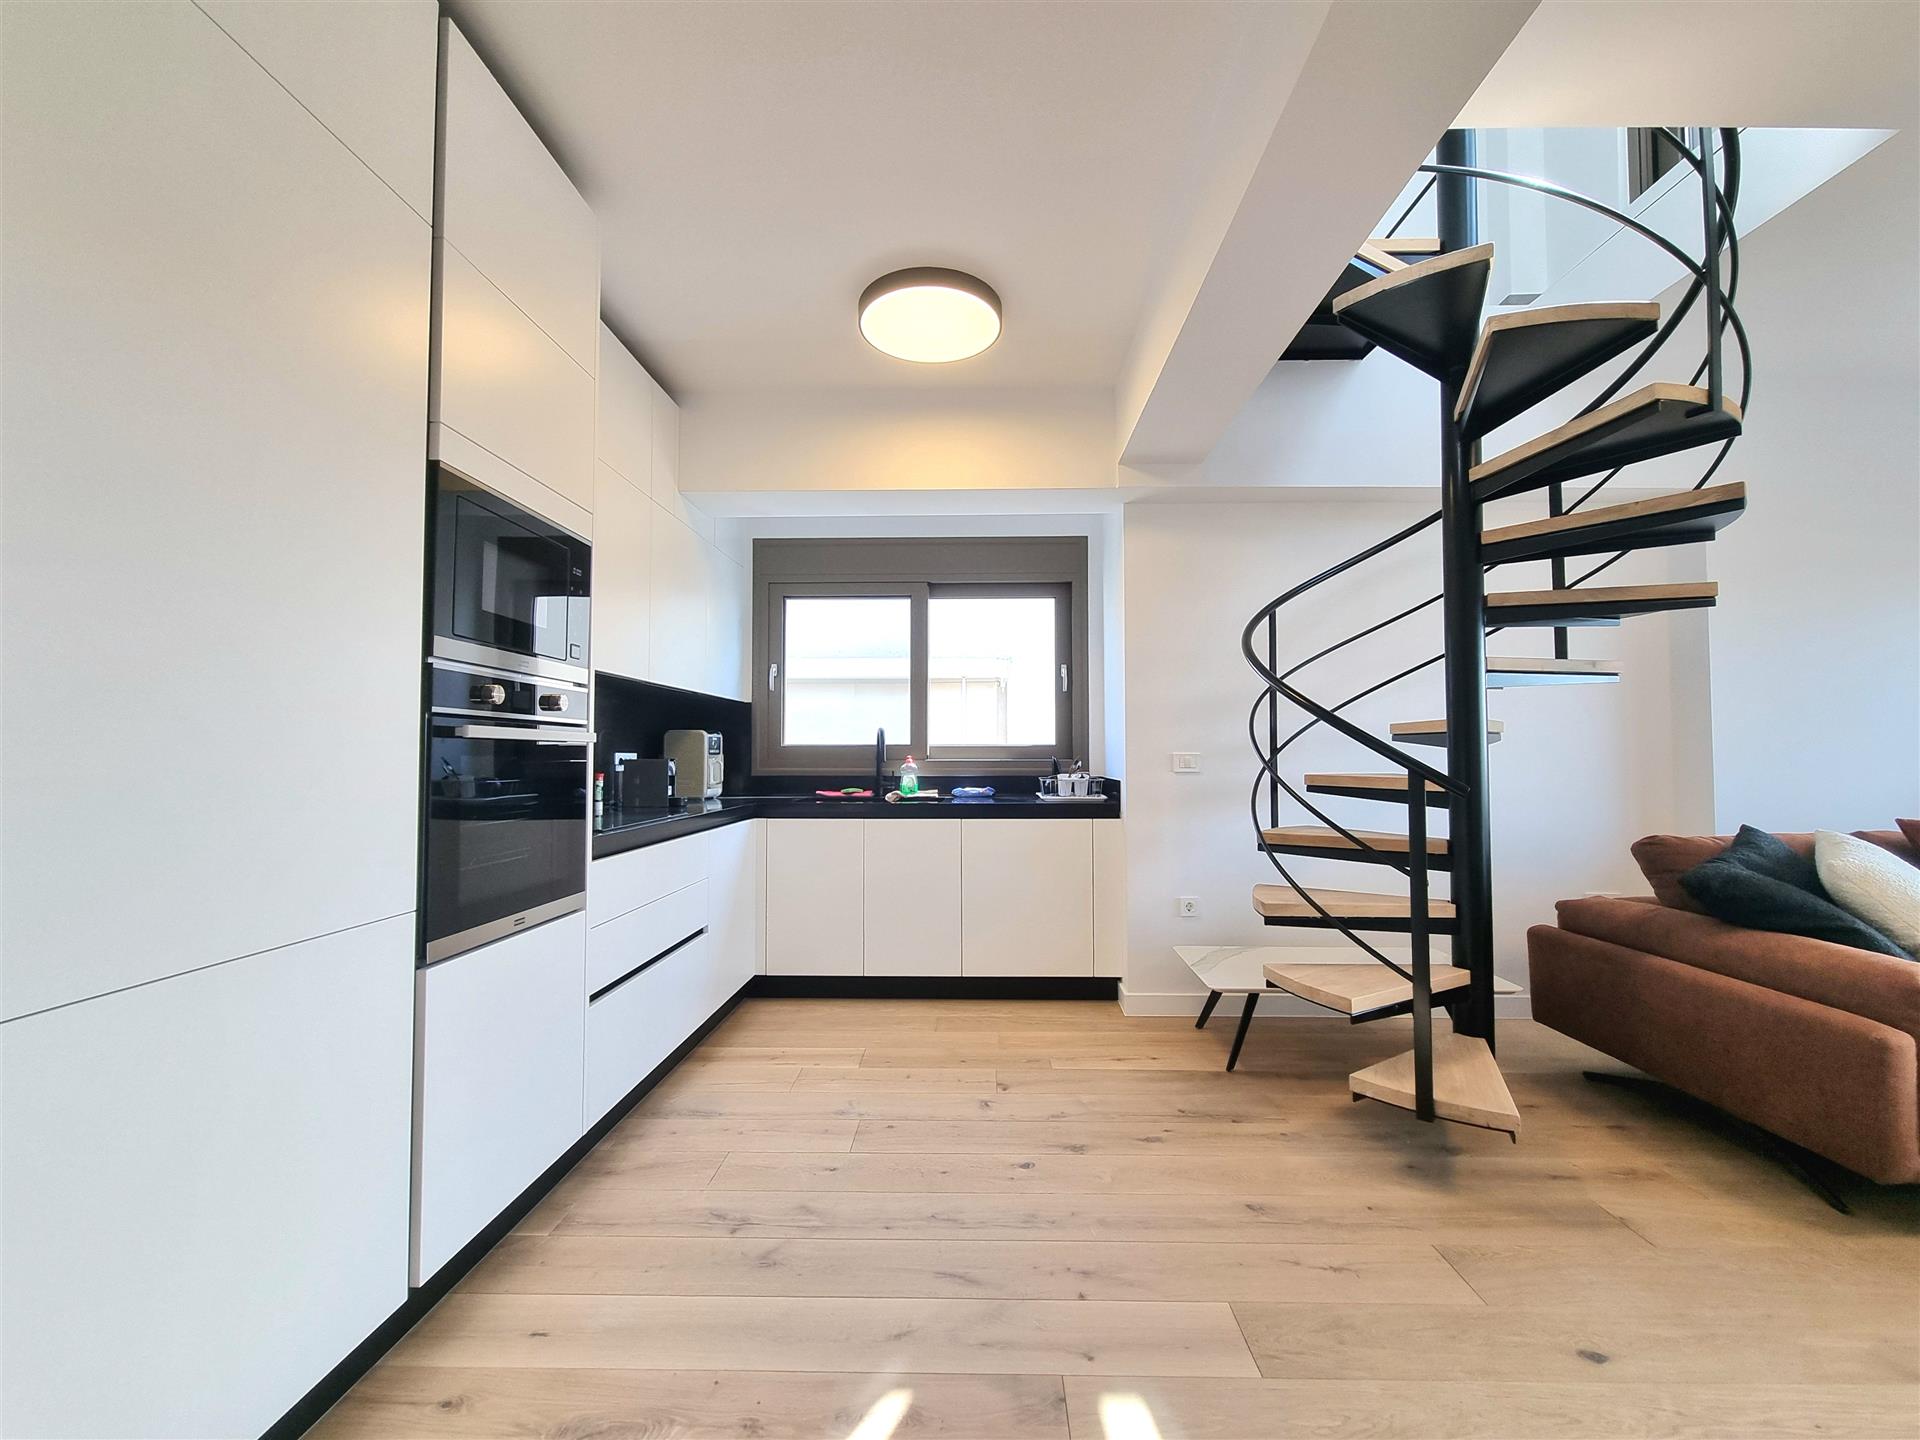 2024 Appartement in de buurt van de zee | Bovenste verdieping